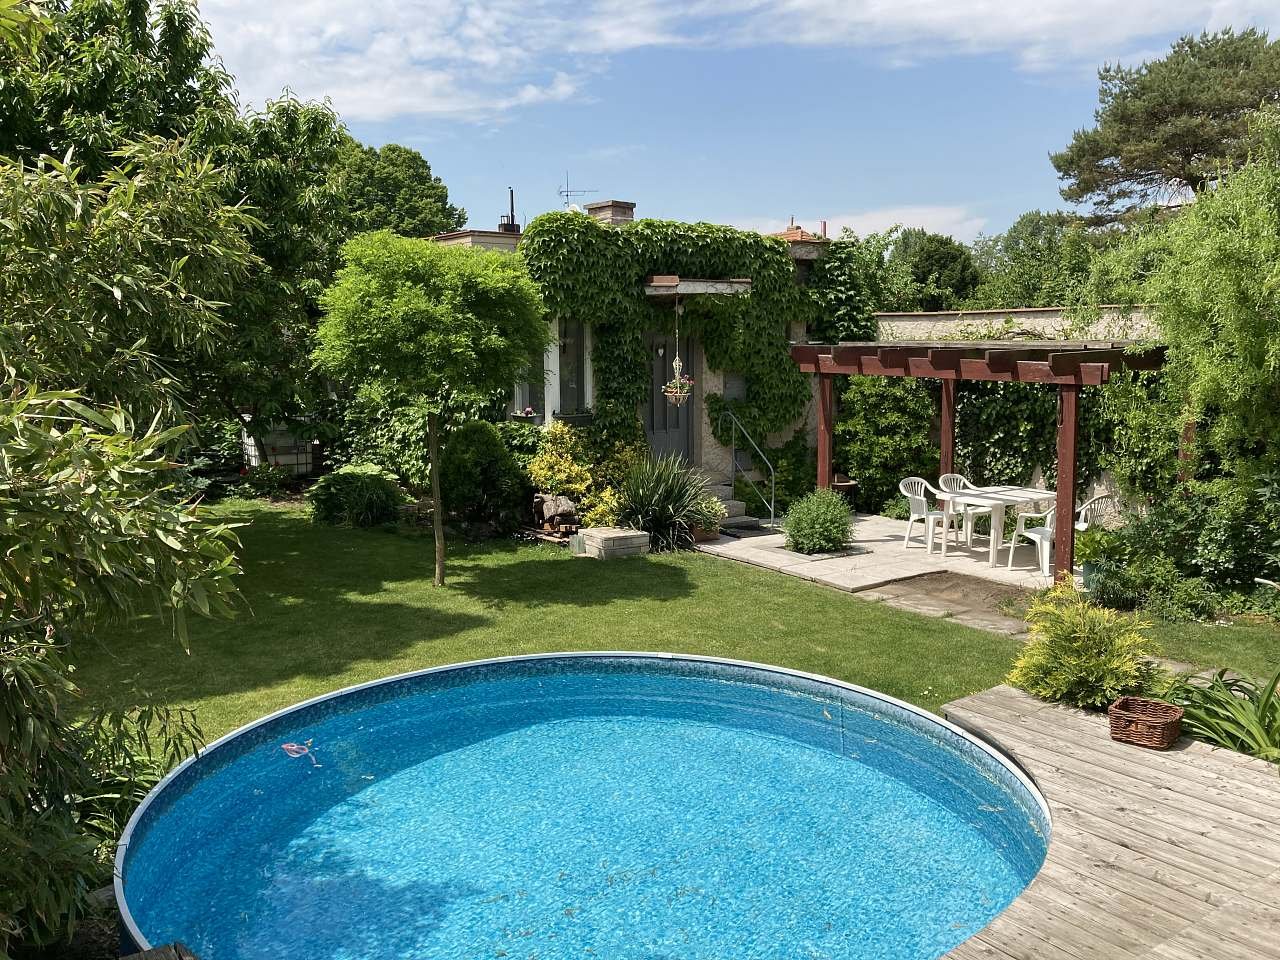 En lille swimmingpool i haven med en lejlighed og en åben pergola